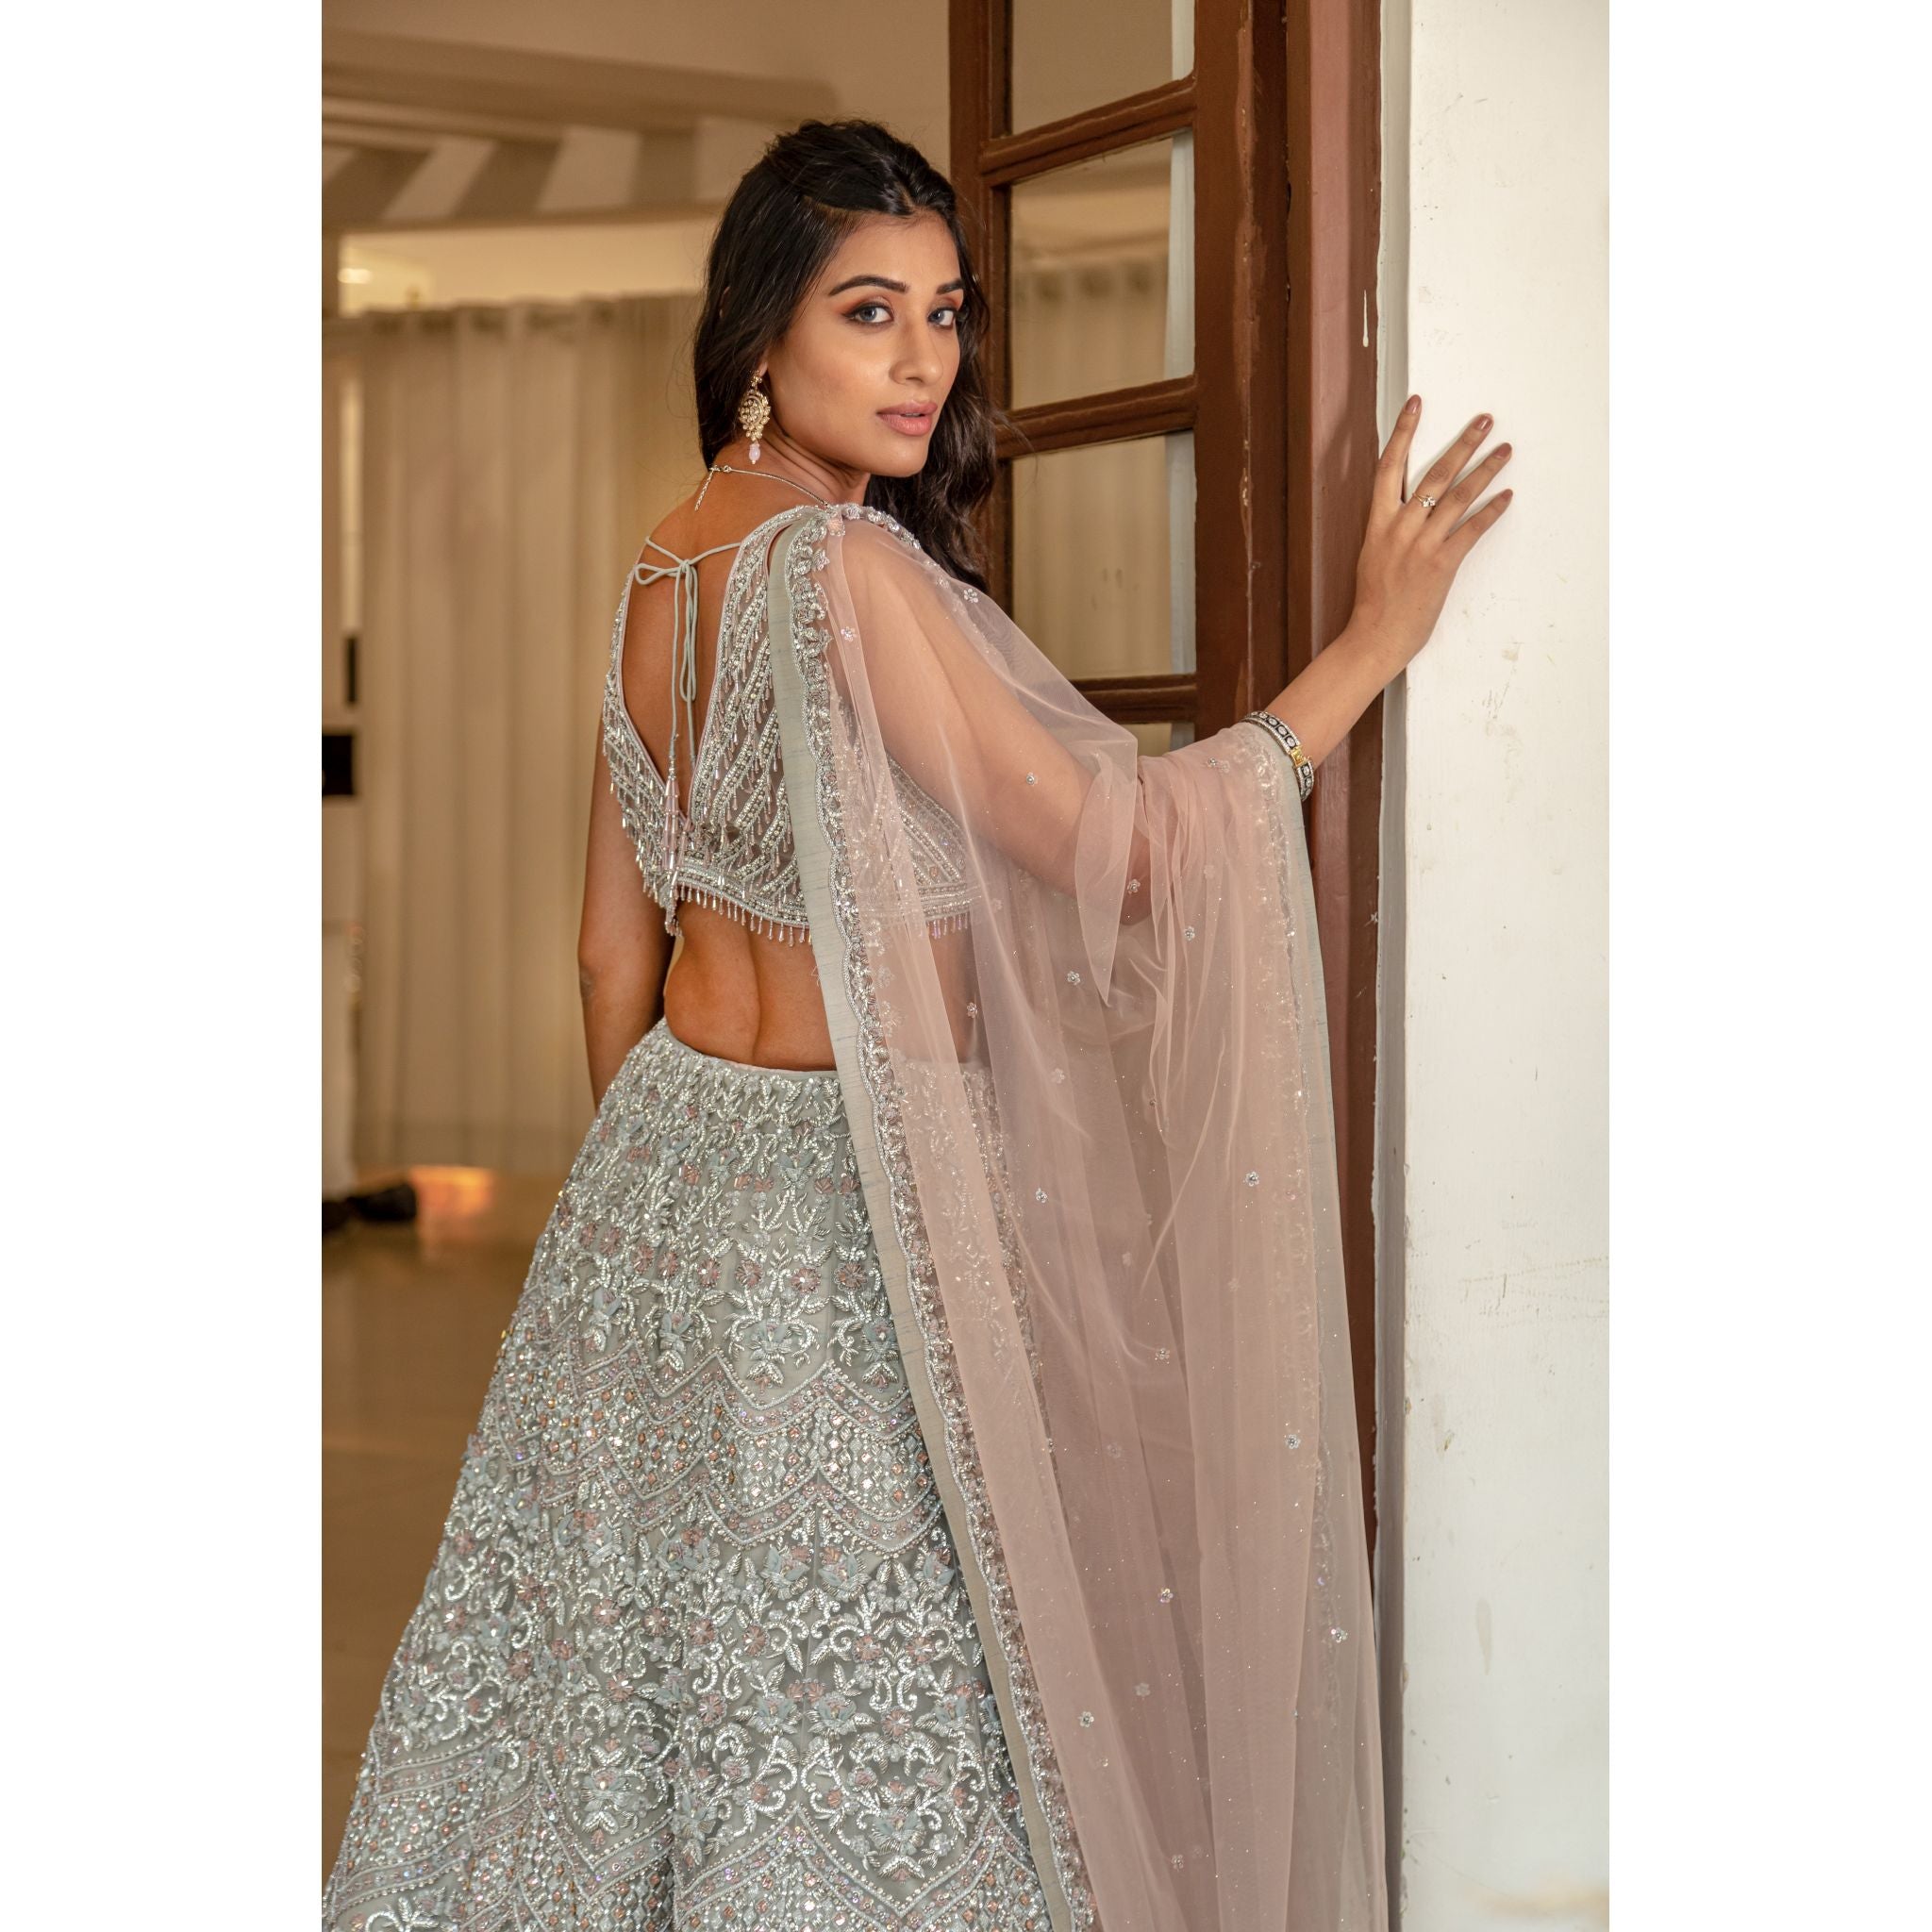 Stone Grey Silver Lehenga Set - Indian Designer Bridal Wedding Outfit